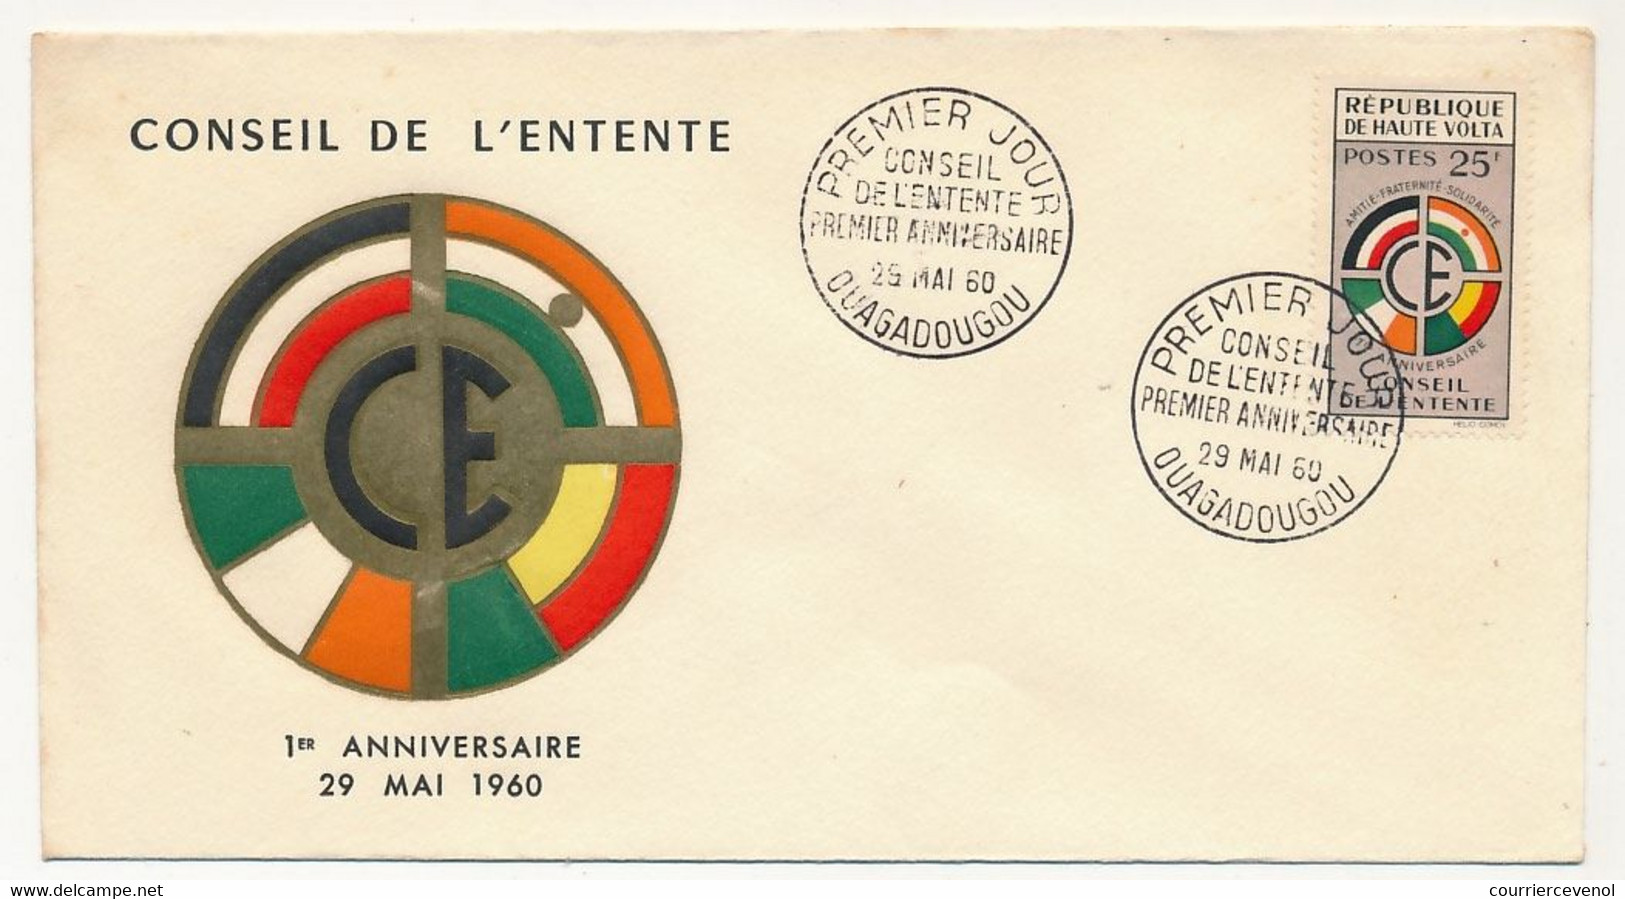 NIGER - Enveloppe FDC - 25F Conseil De L'Entente - Premier Anniversaire - NIAMEY - 29 Mai 1960 - Níger (1960-...)